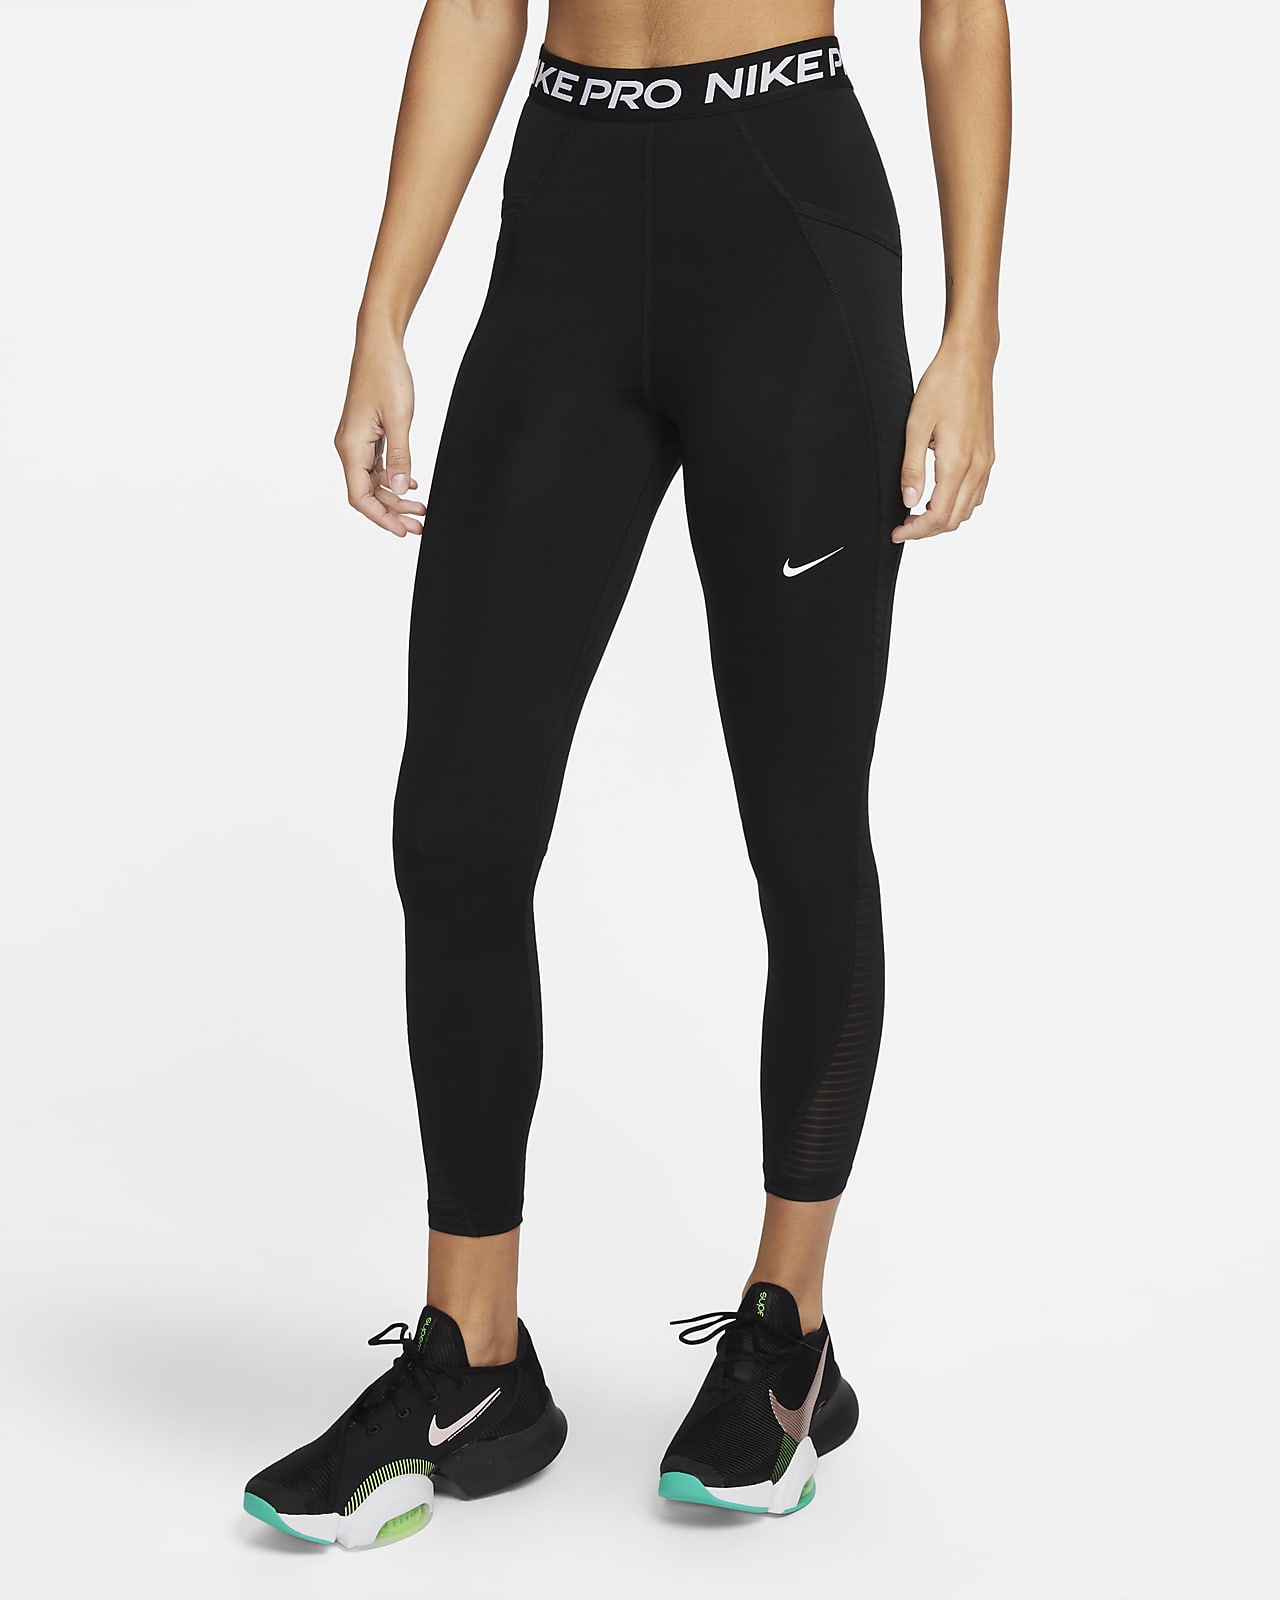 Γυναικείο ψηλόμεσο κολάν με τσέπες Nike Pro Dri-FIT